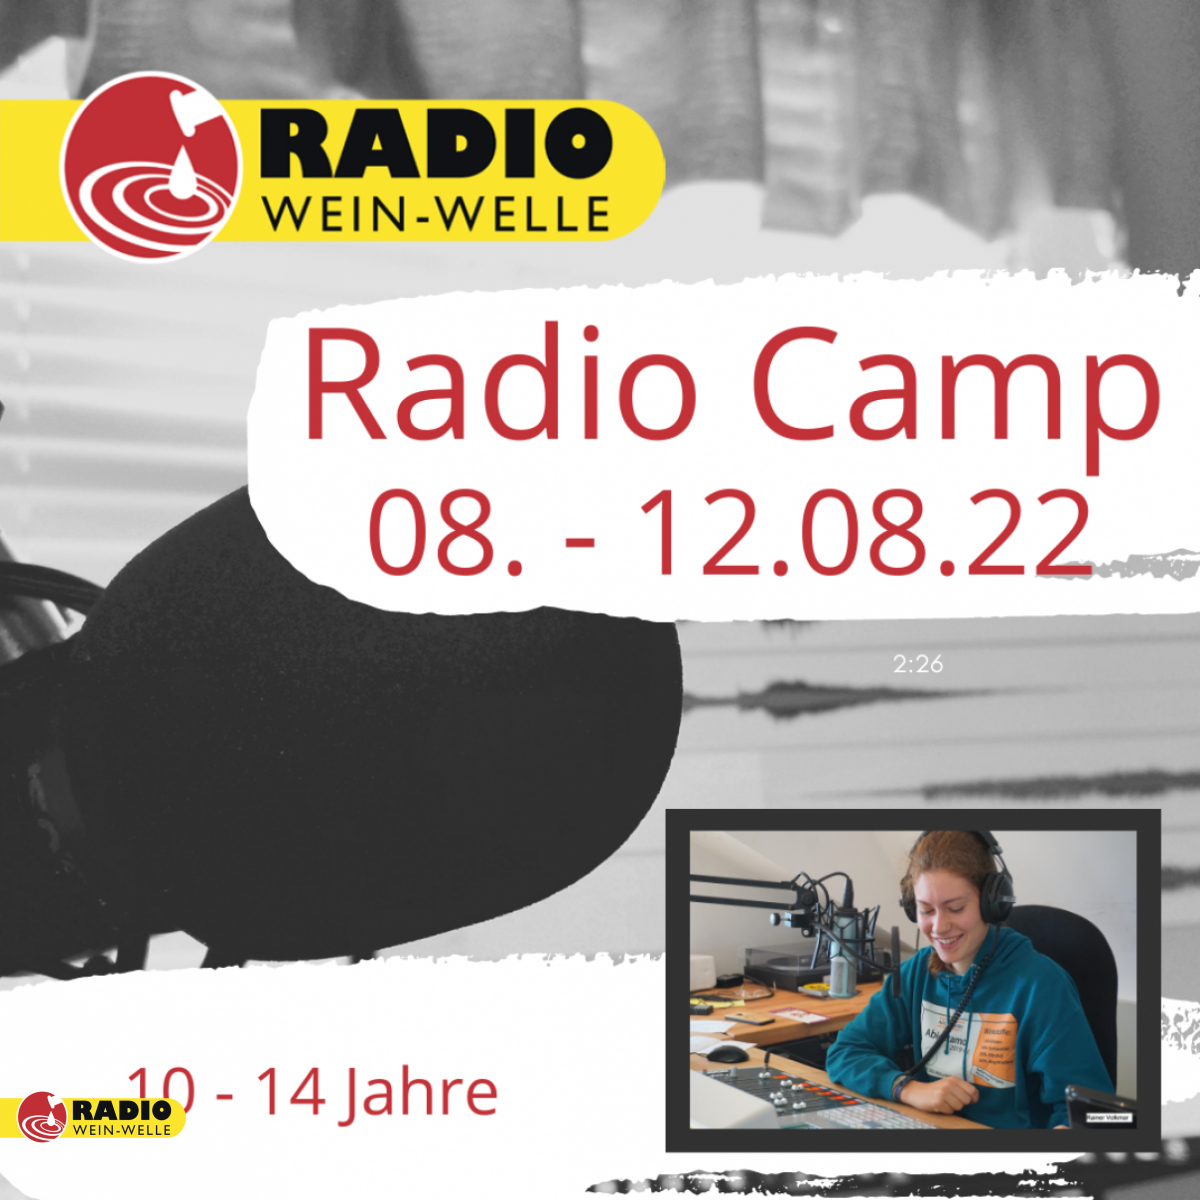 Radio-Camp in den Sommerferien